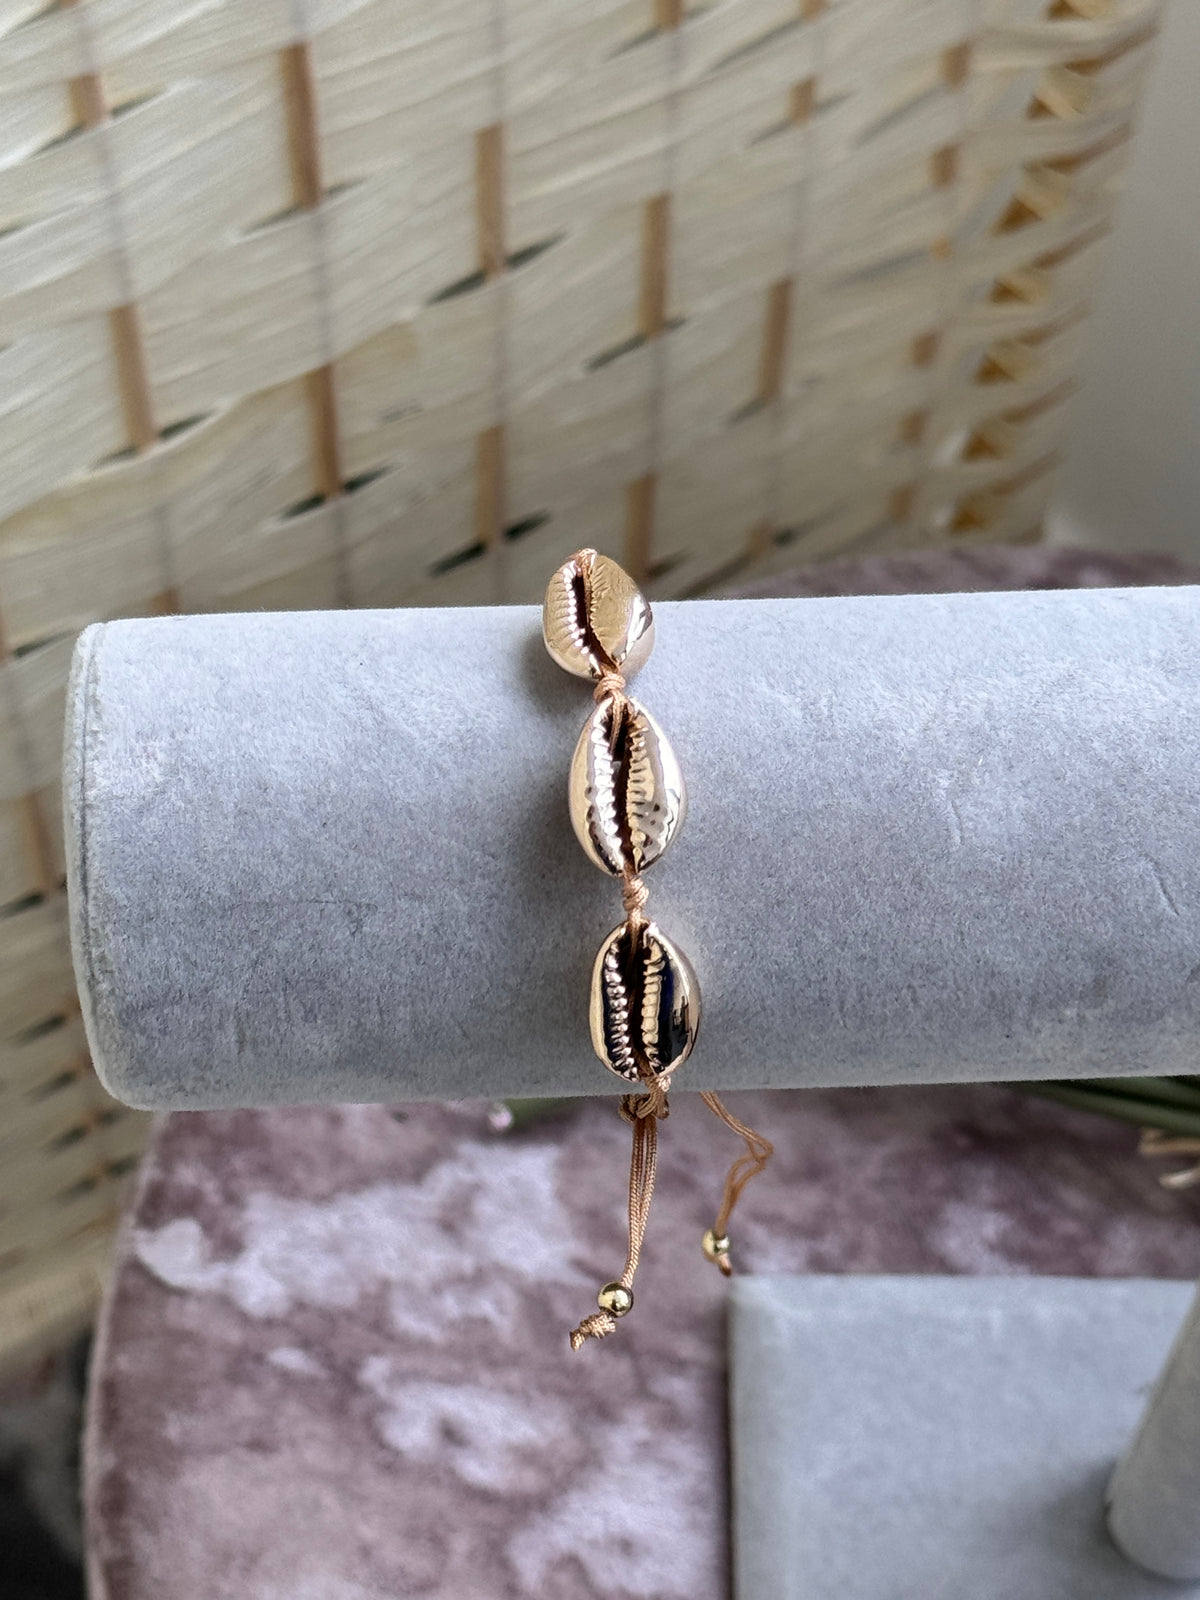 Shell bracelet/anklet